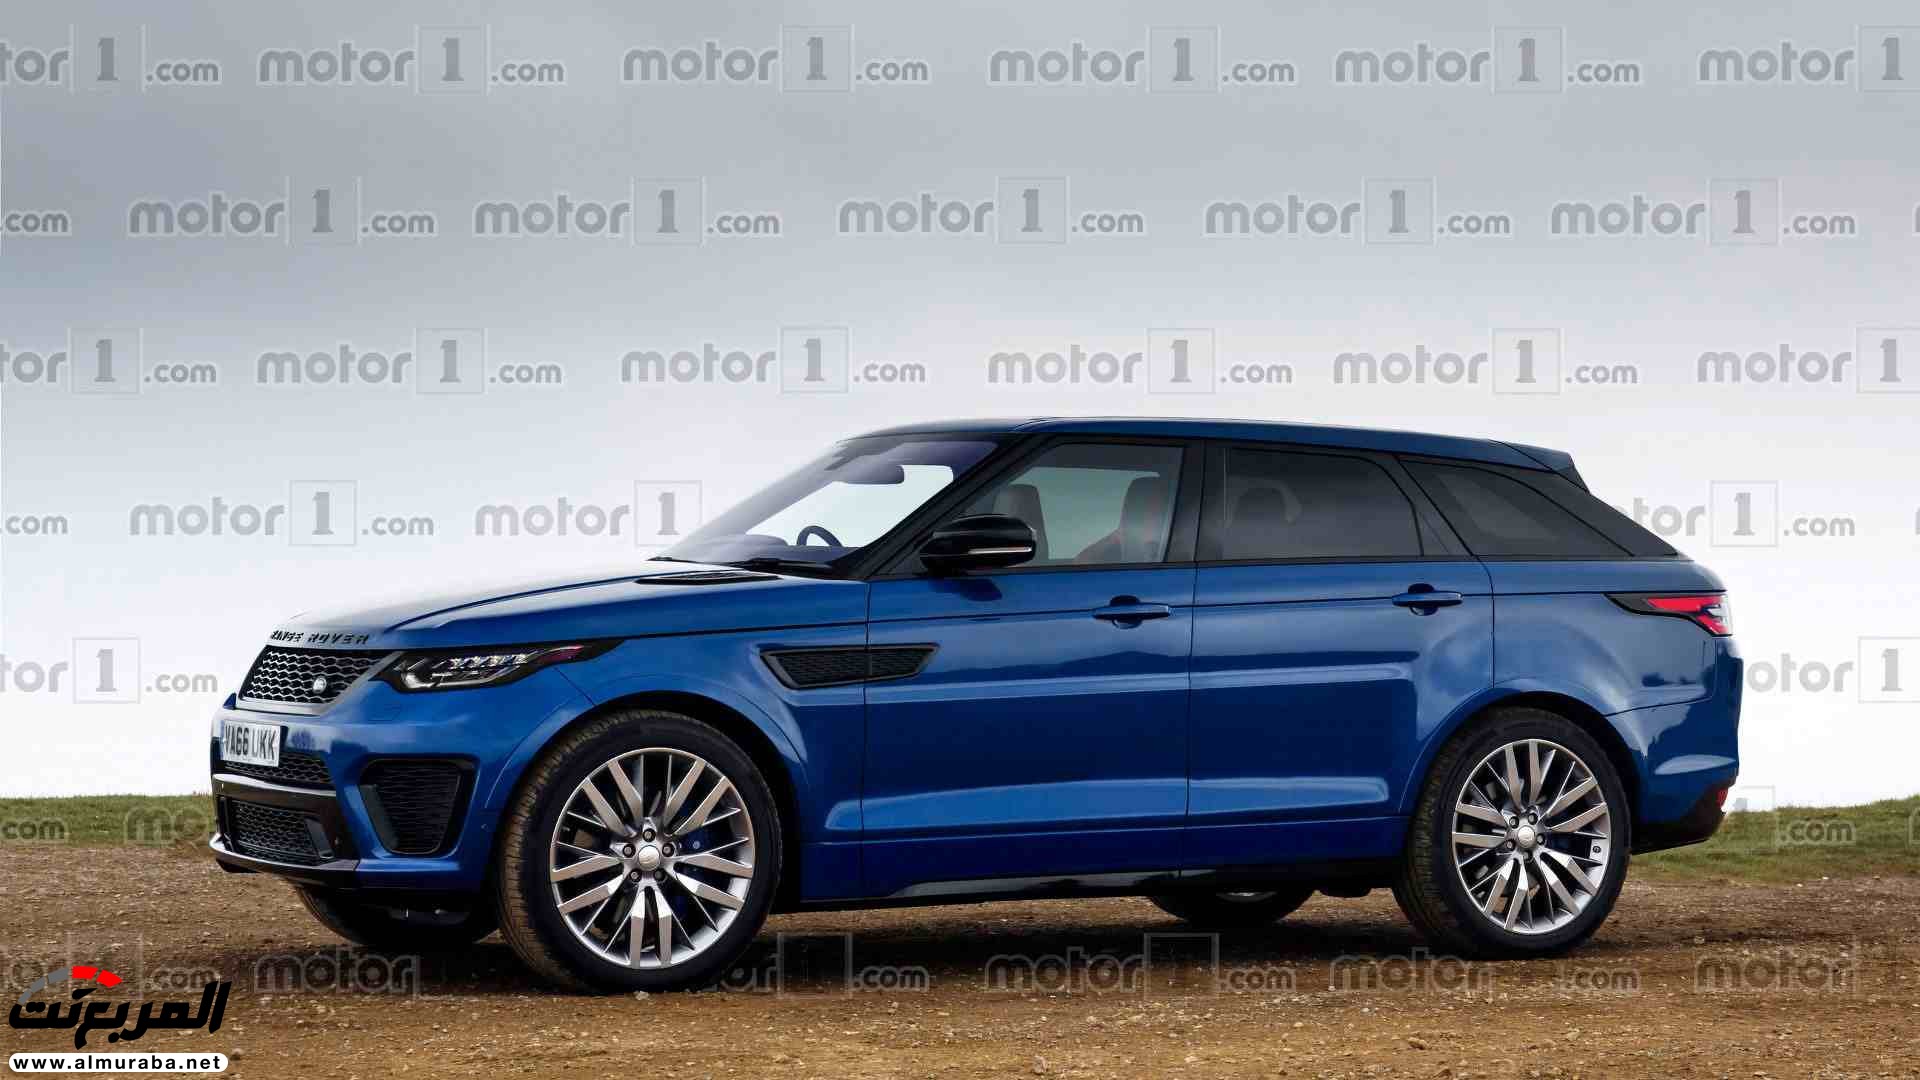 “صورة افتراضية” تكشف عن شكل “رينج روفر” سبورت كوبيه القادمة 2018 Range Rover Sport Coupe